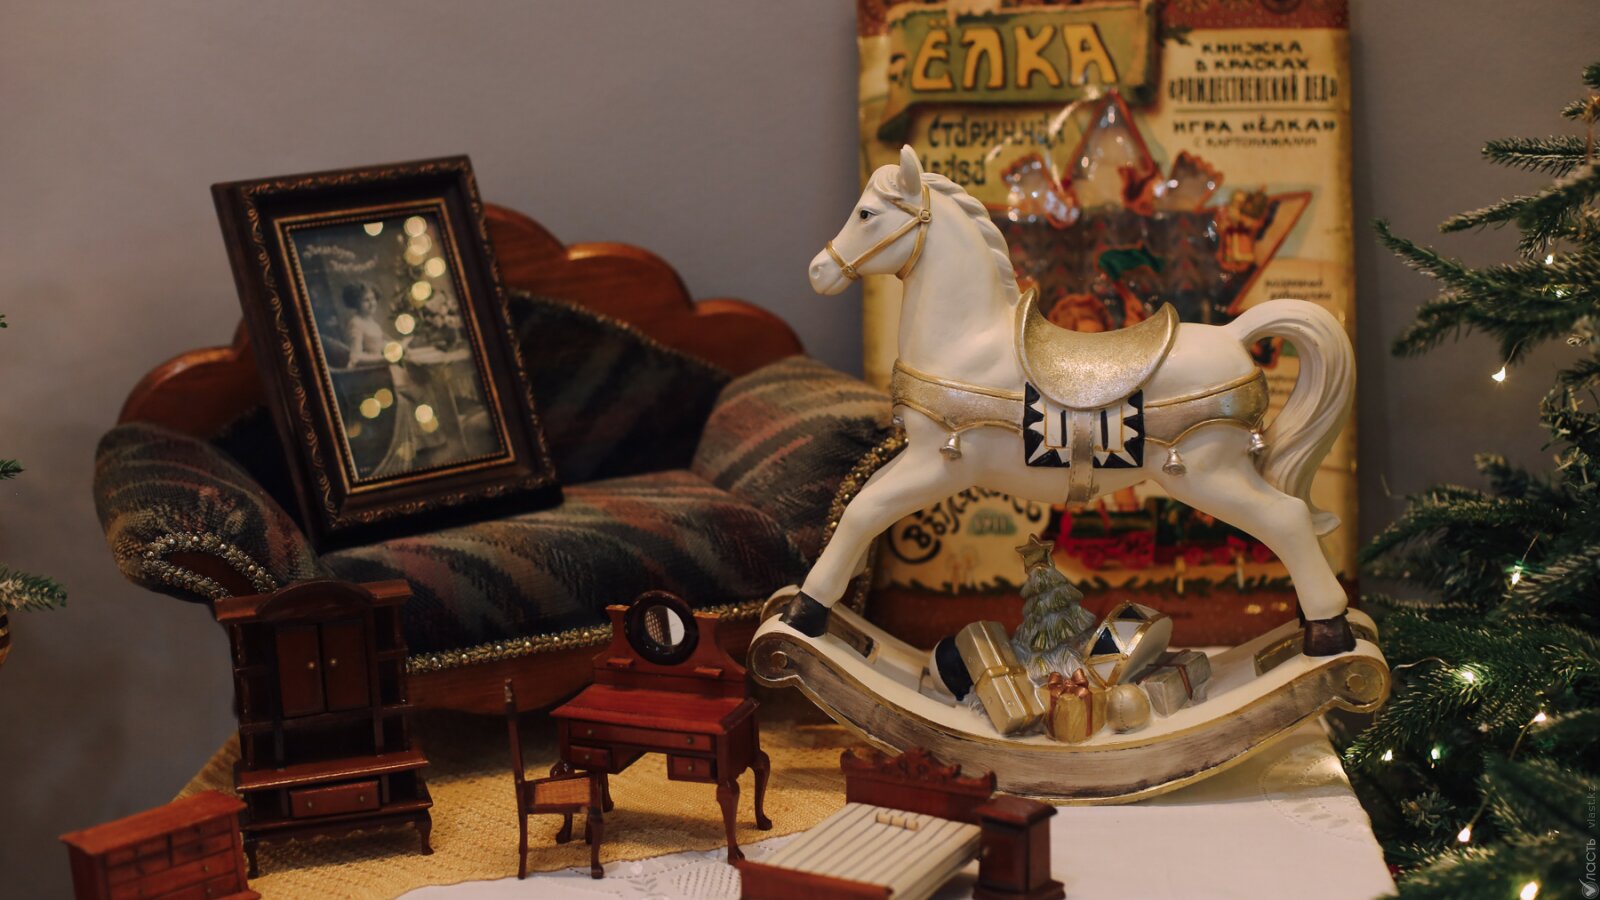  Коллекционер Светлана Крупко: «Елочные игрушки – это не только праздник, но и история» 